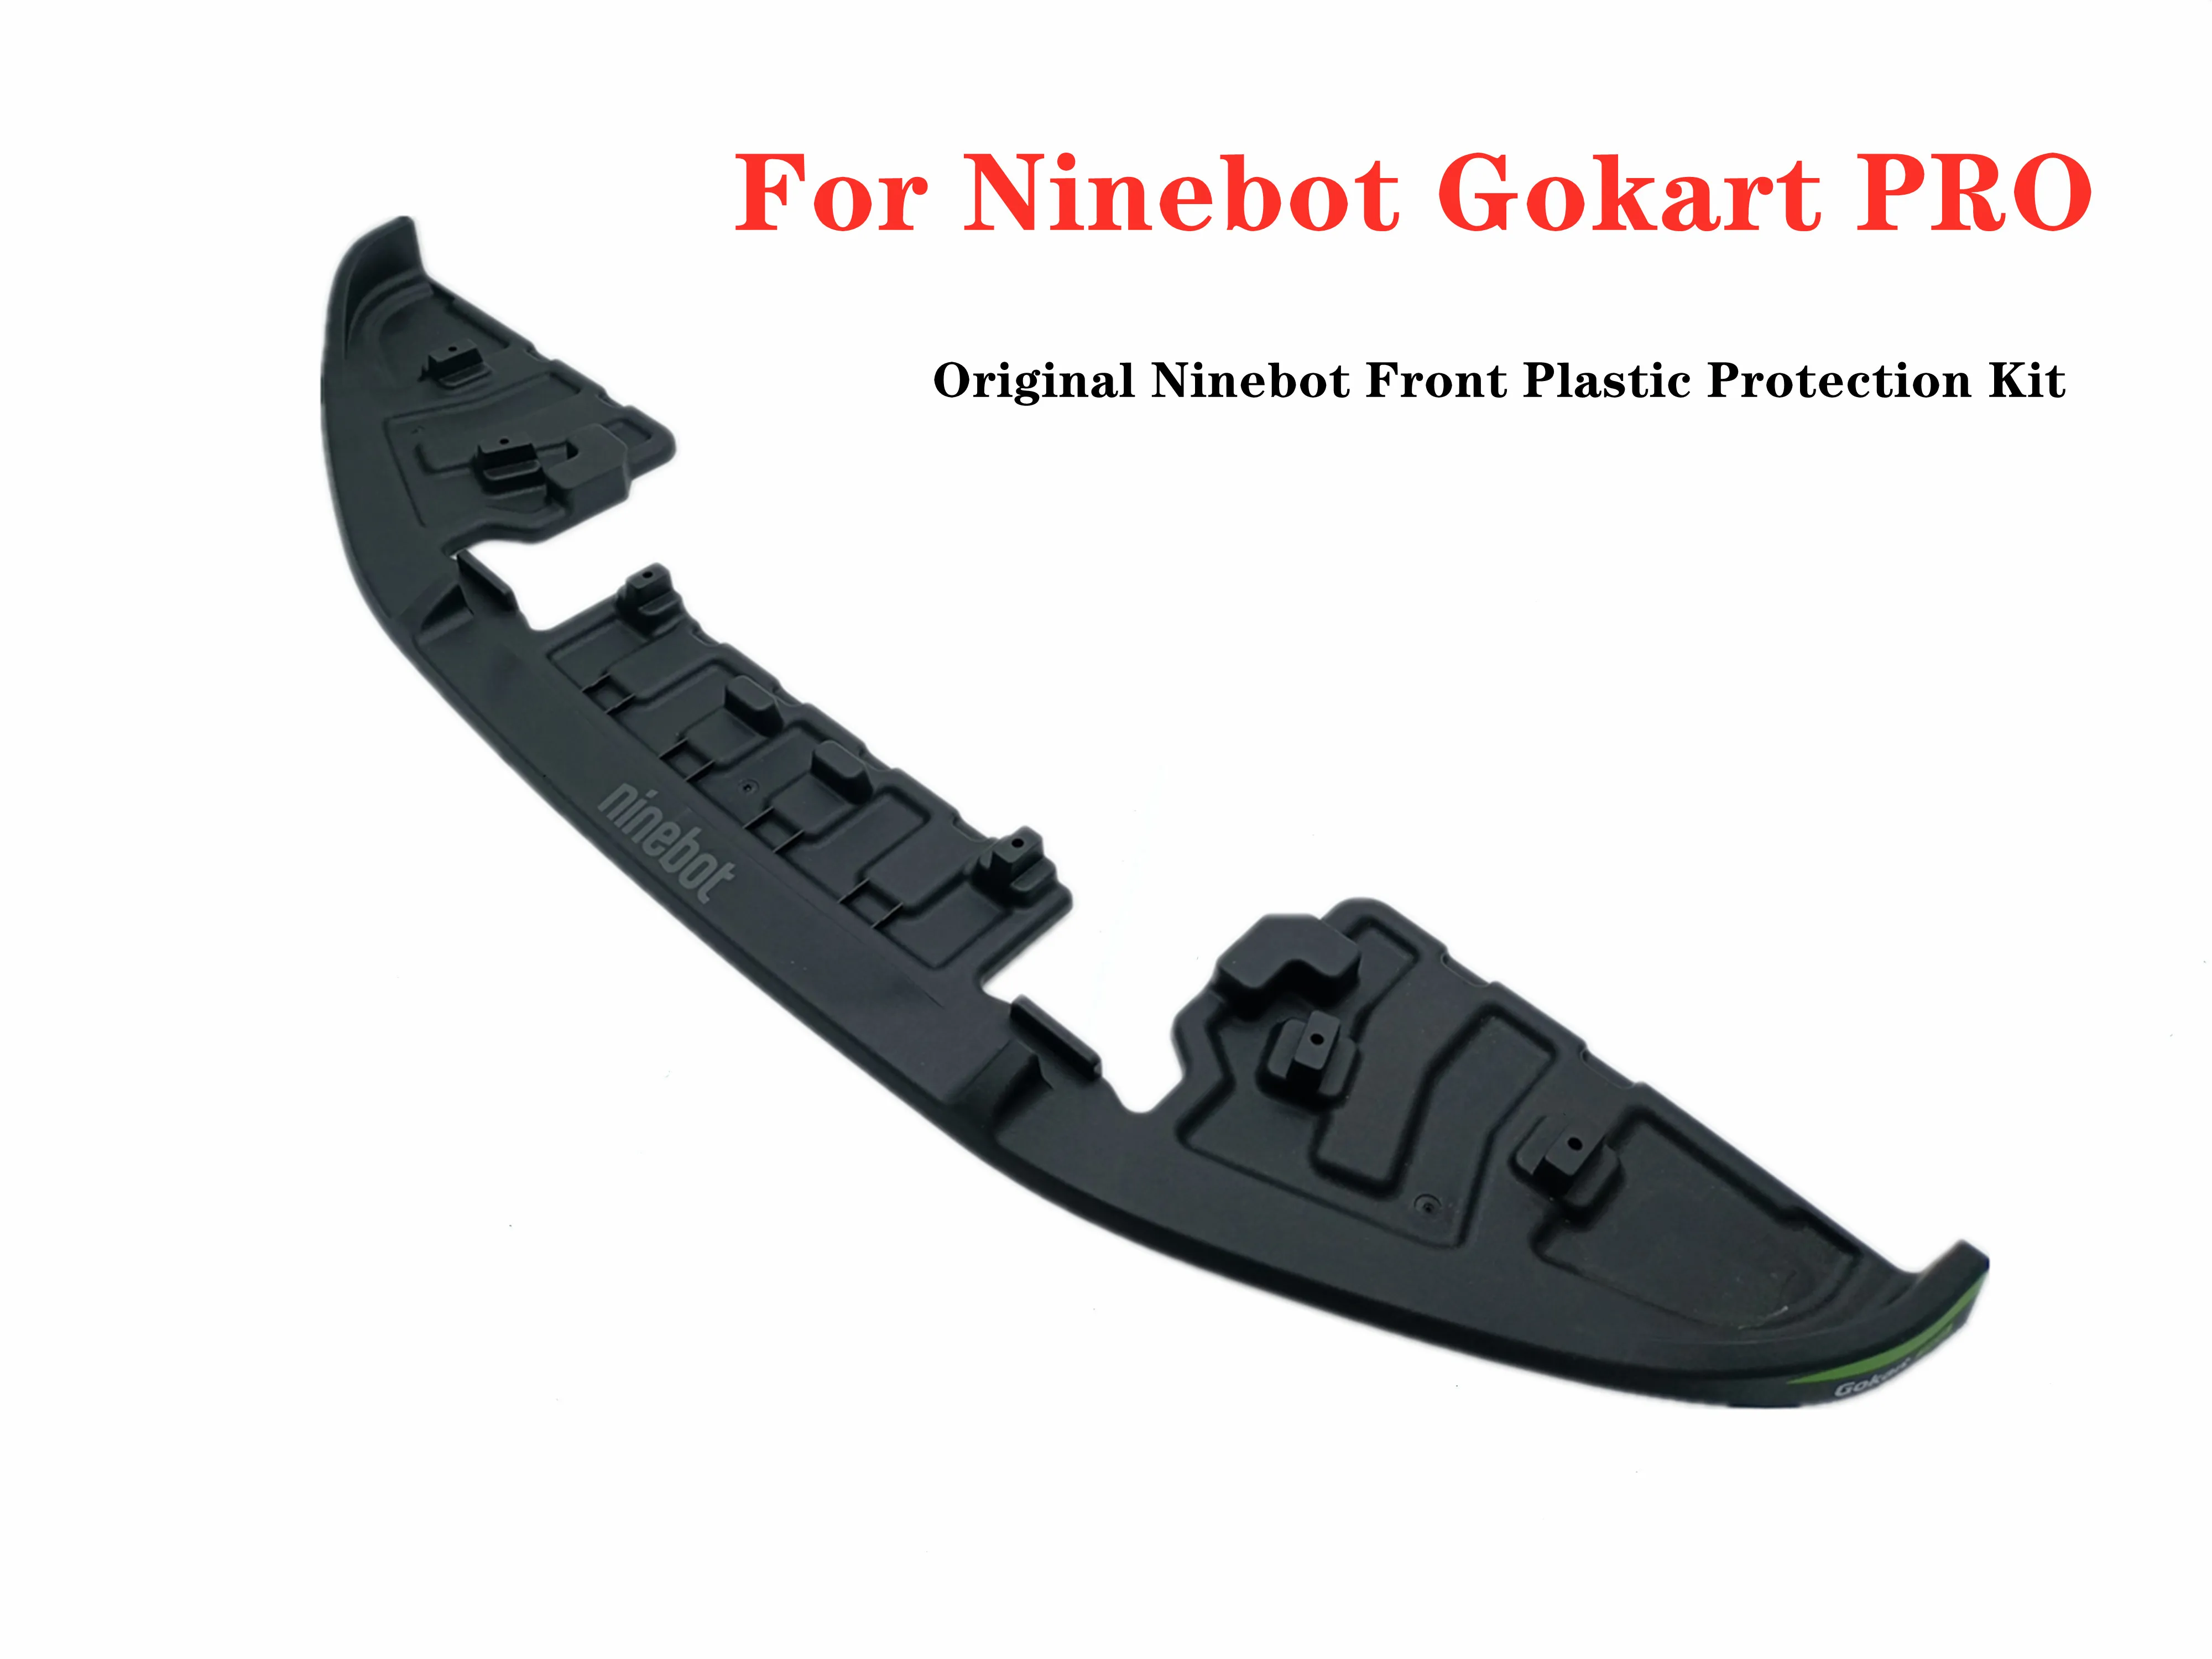 Оригинальный Комплект Передней Пластиковой Защиты Ninebot для Ninebot Gokart PRO Refit Smart Self Balance Запасные Части Для Электрического Скутера